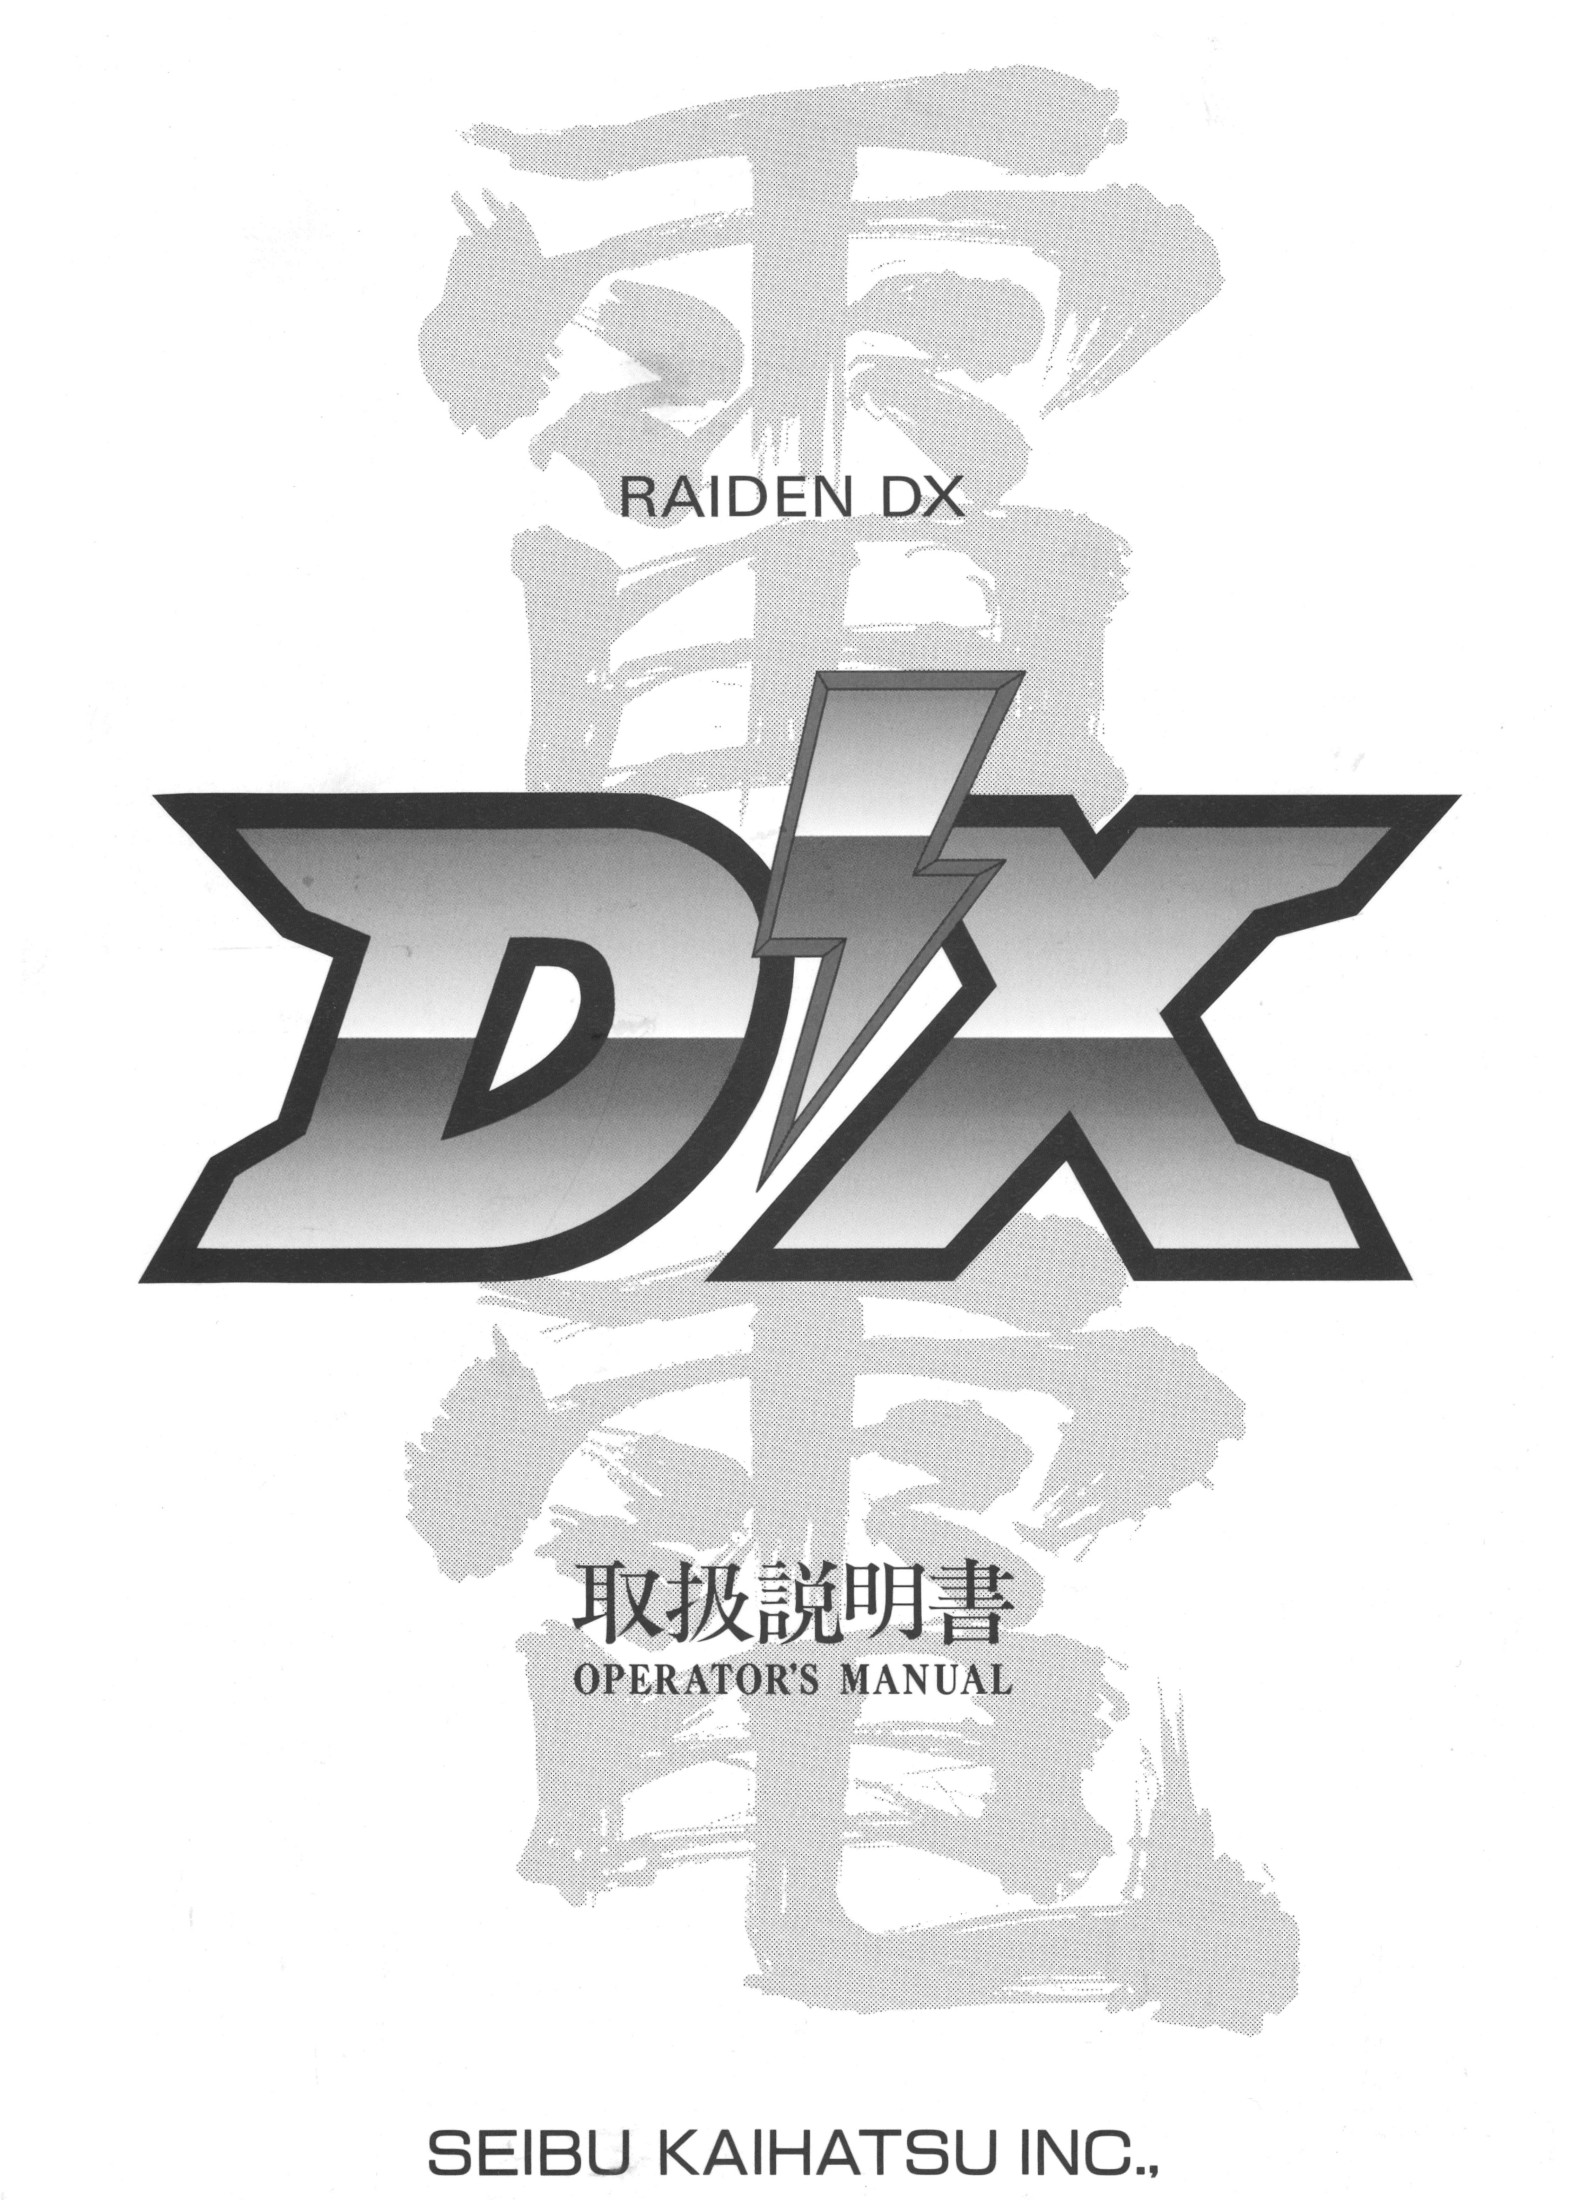 Raiden DX Manual